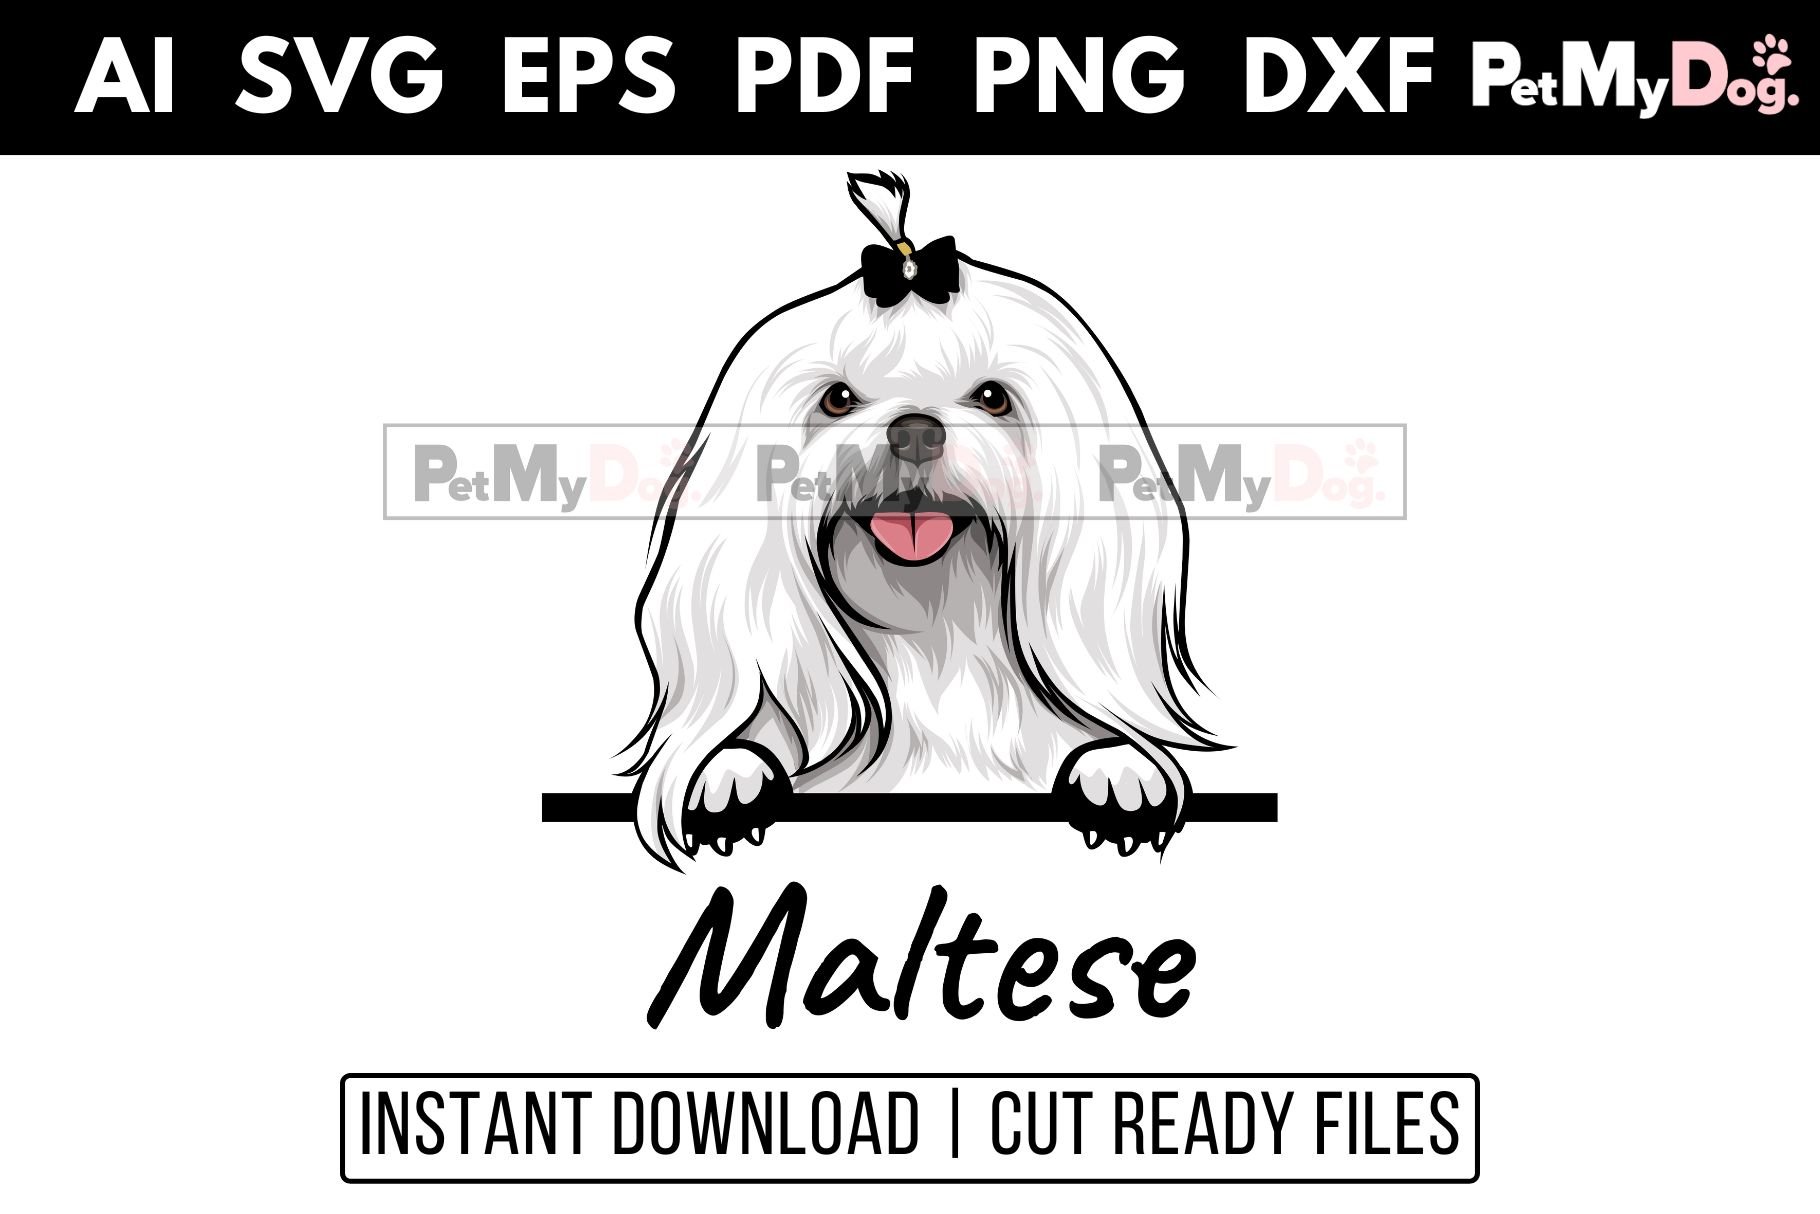 Maltese - Peeking Dog cover image.